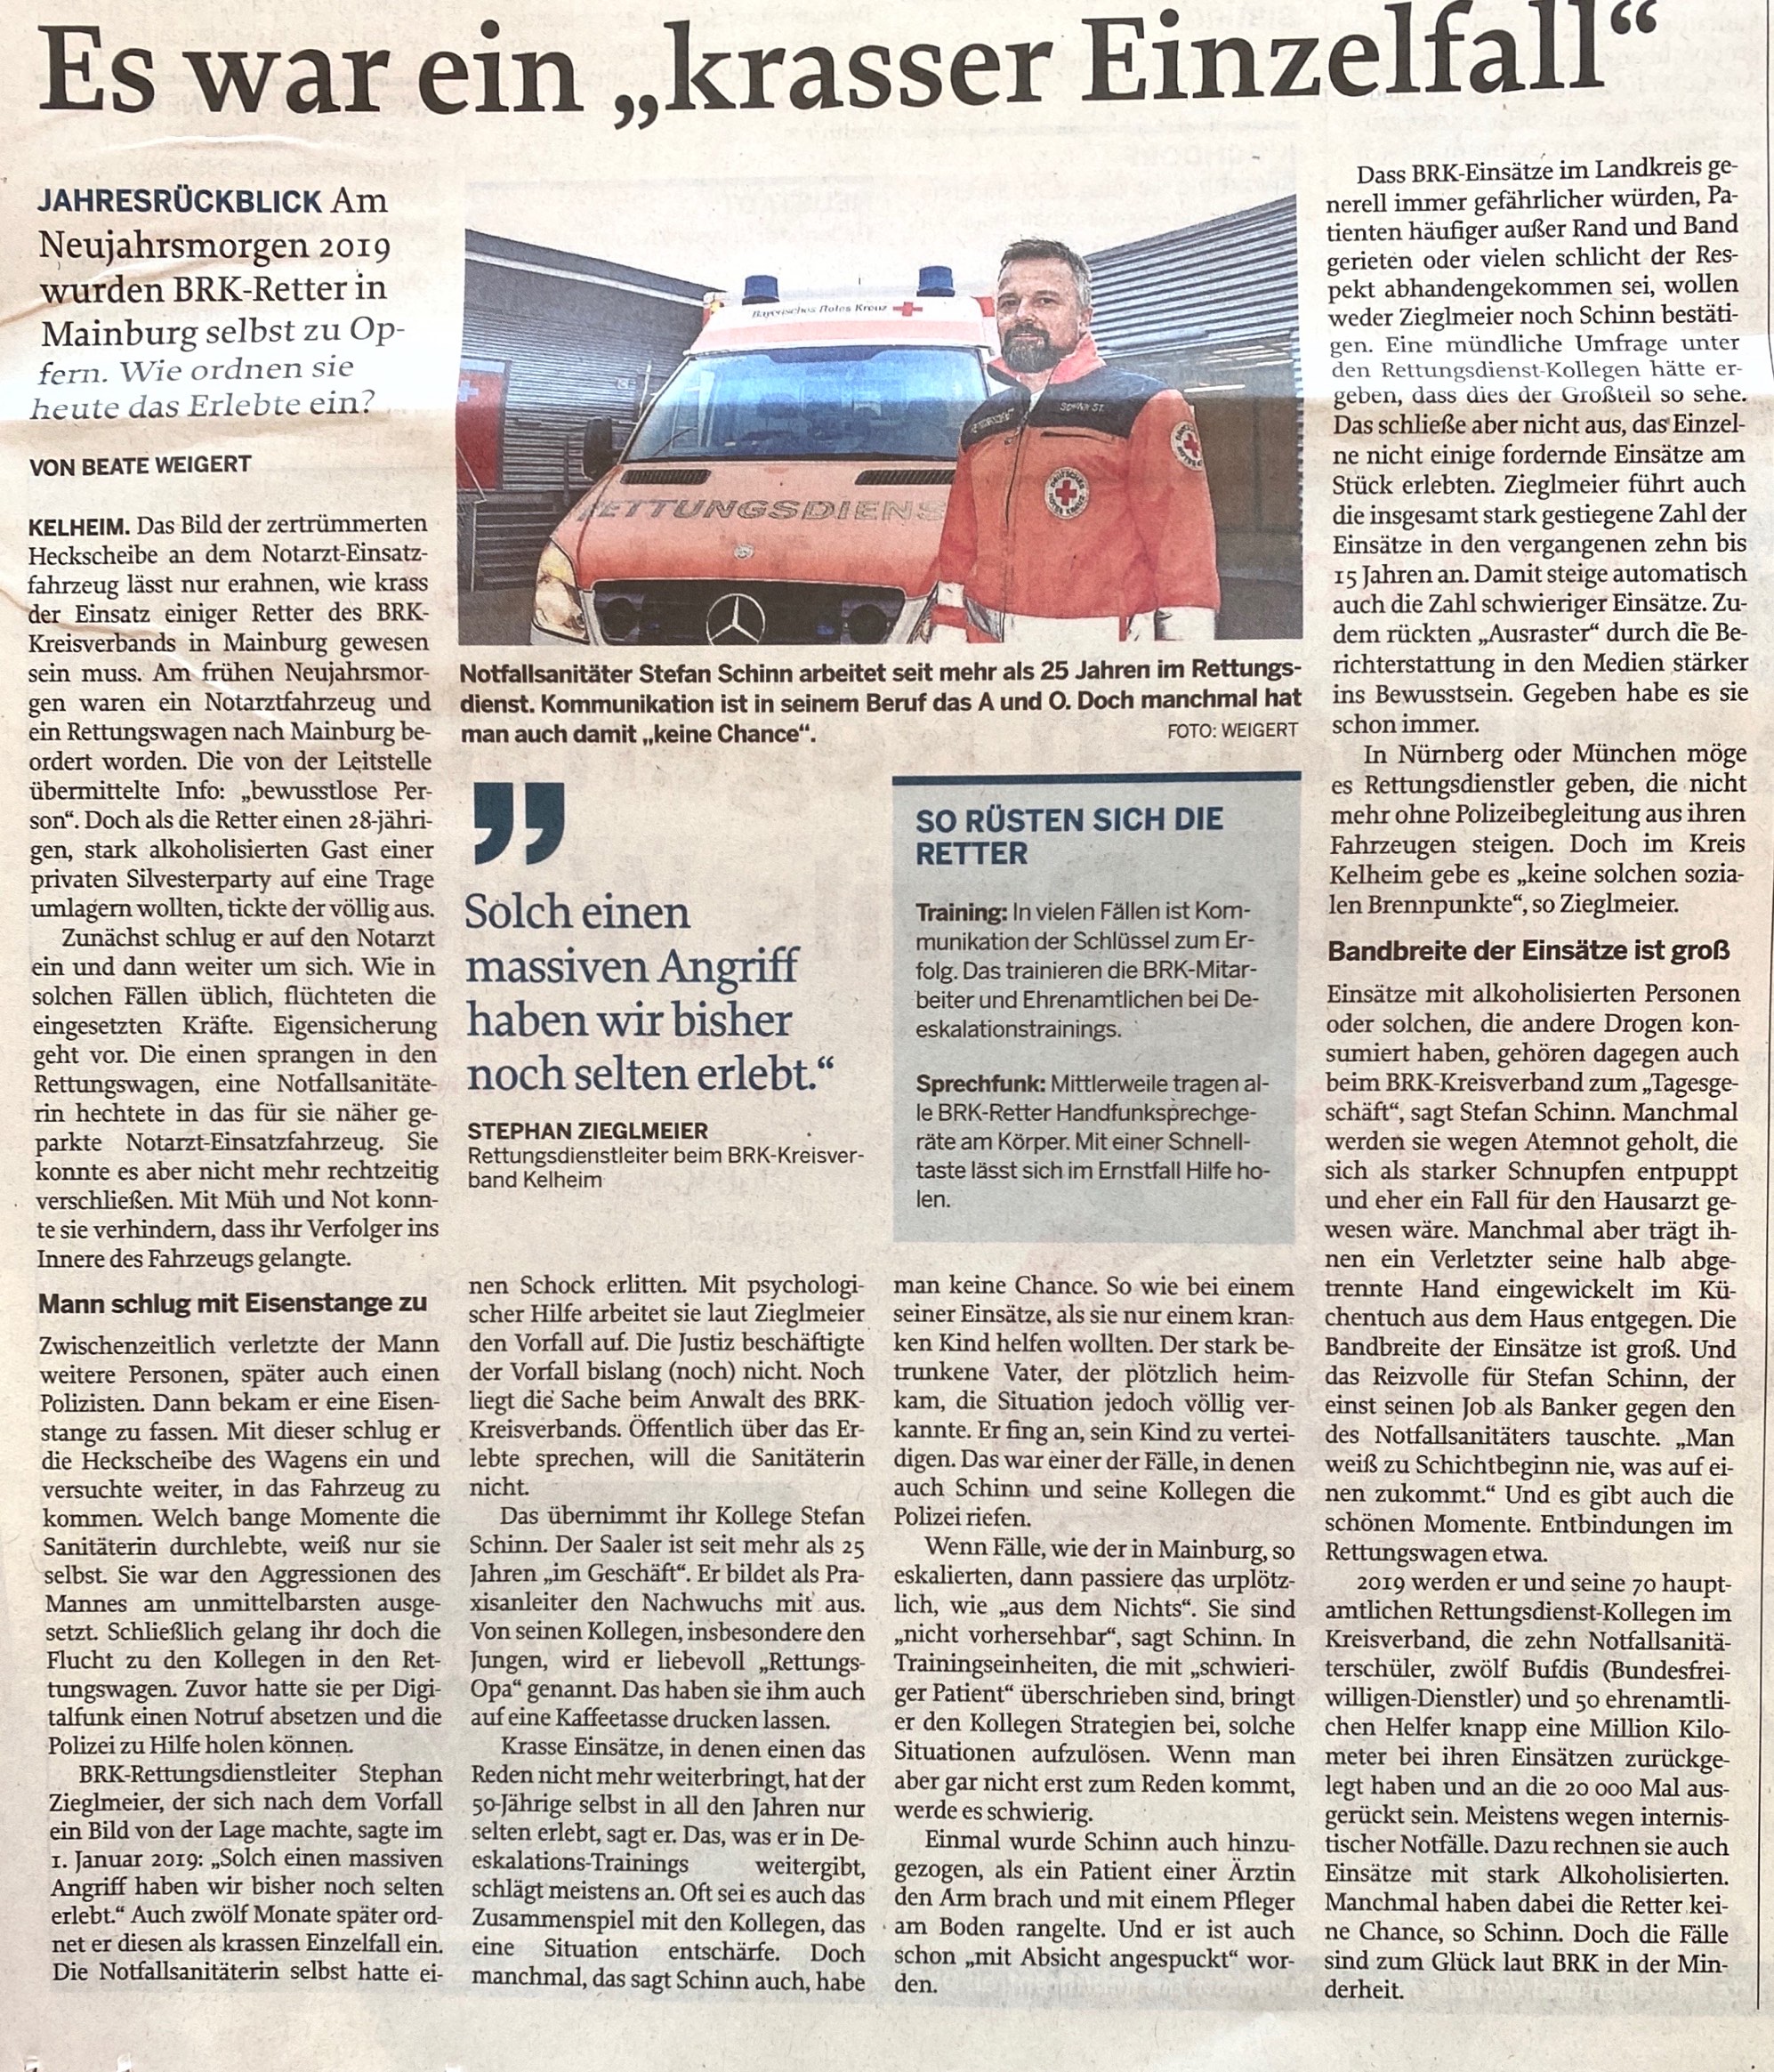 Stefan Schinn - Es war ein "krasser Einzelfall" (Mittelbayerische Zeitung, 31.12.2019)